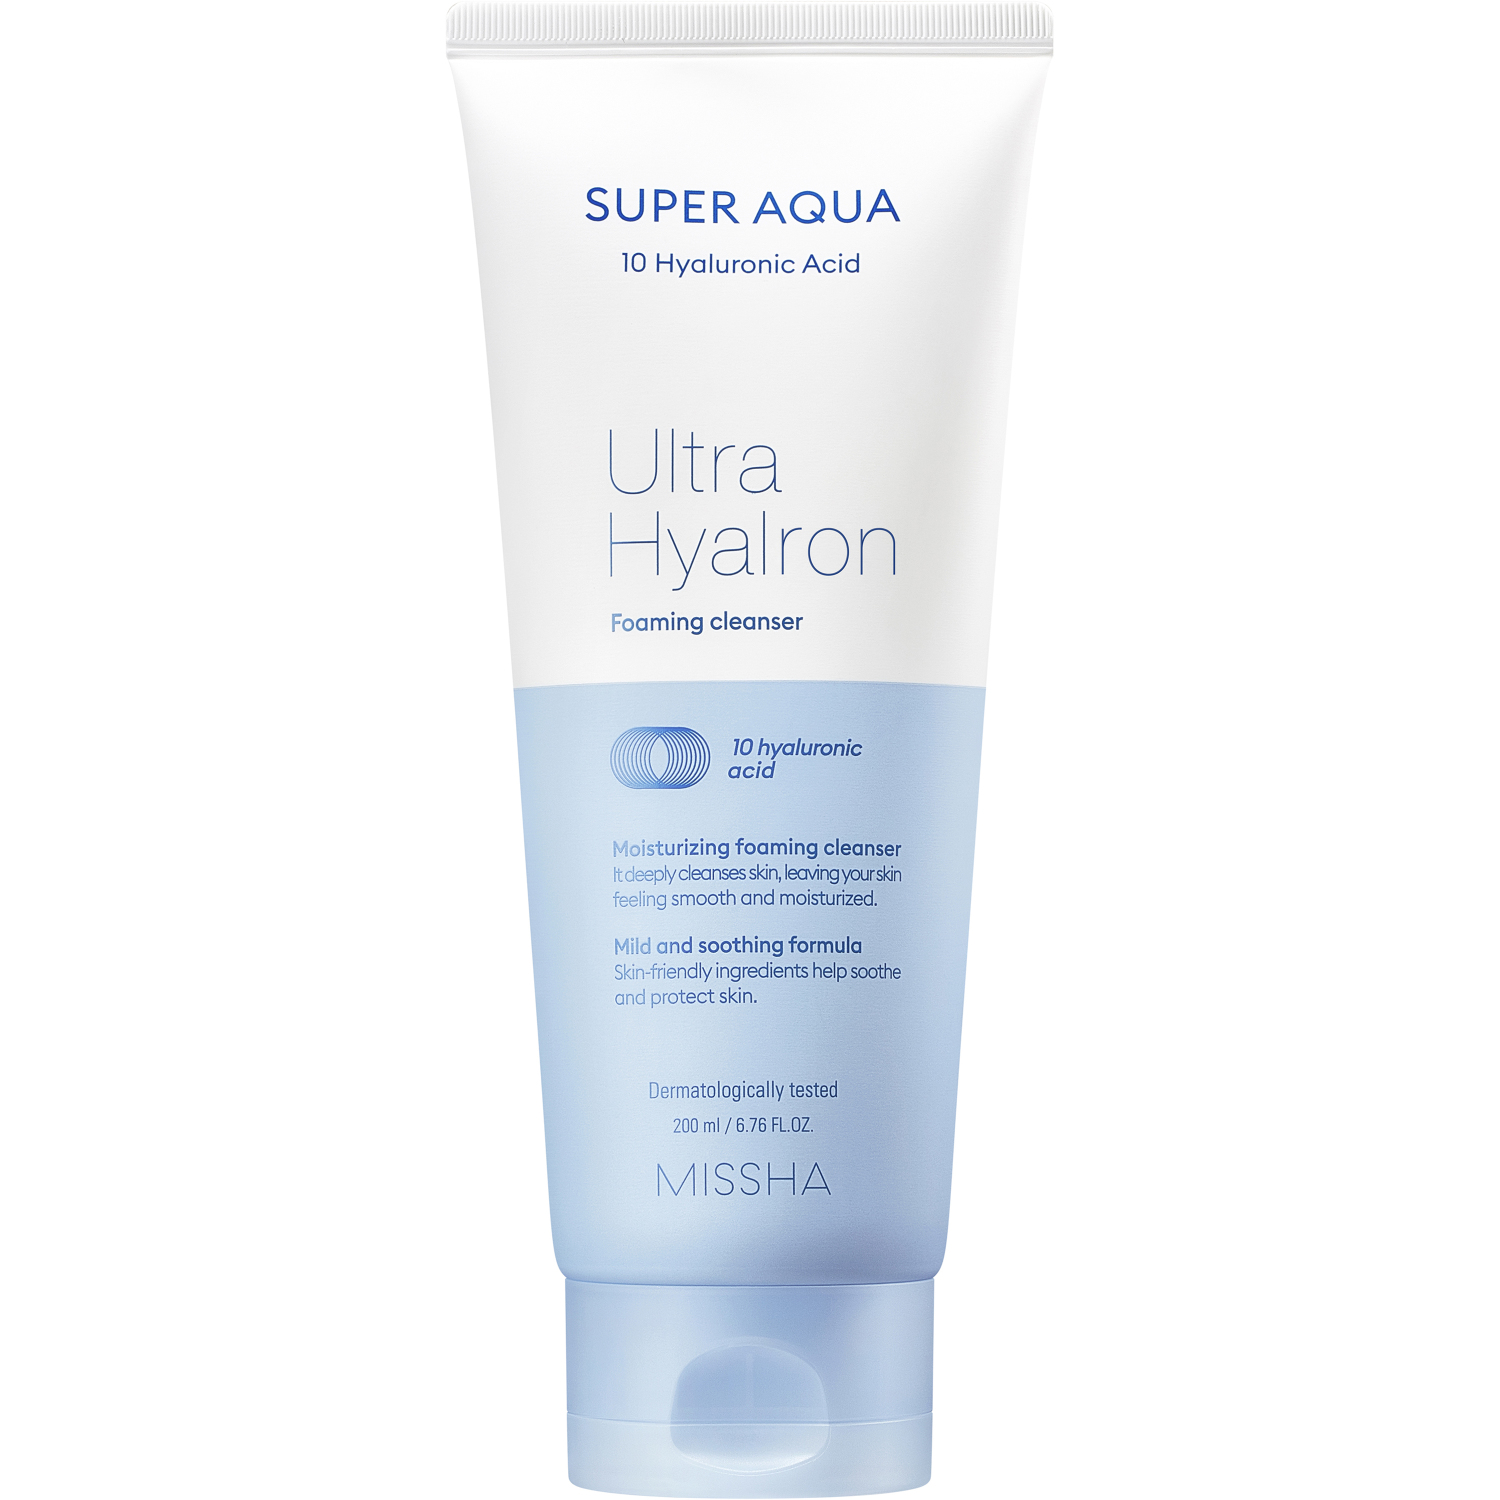 Пенка Missha Super Aqua Ultra Hyalron для умывания и снятия макияжа, 200 мл пенка для умывания и снятия макияжа missha super aqua ultra hyalron foaming cleanser 200 мл